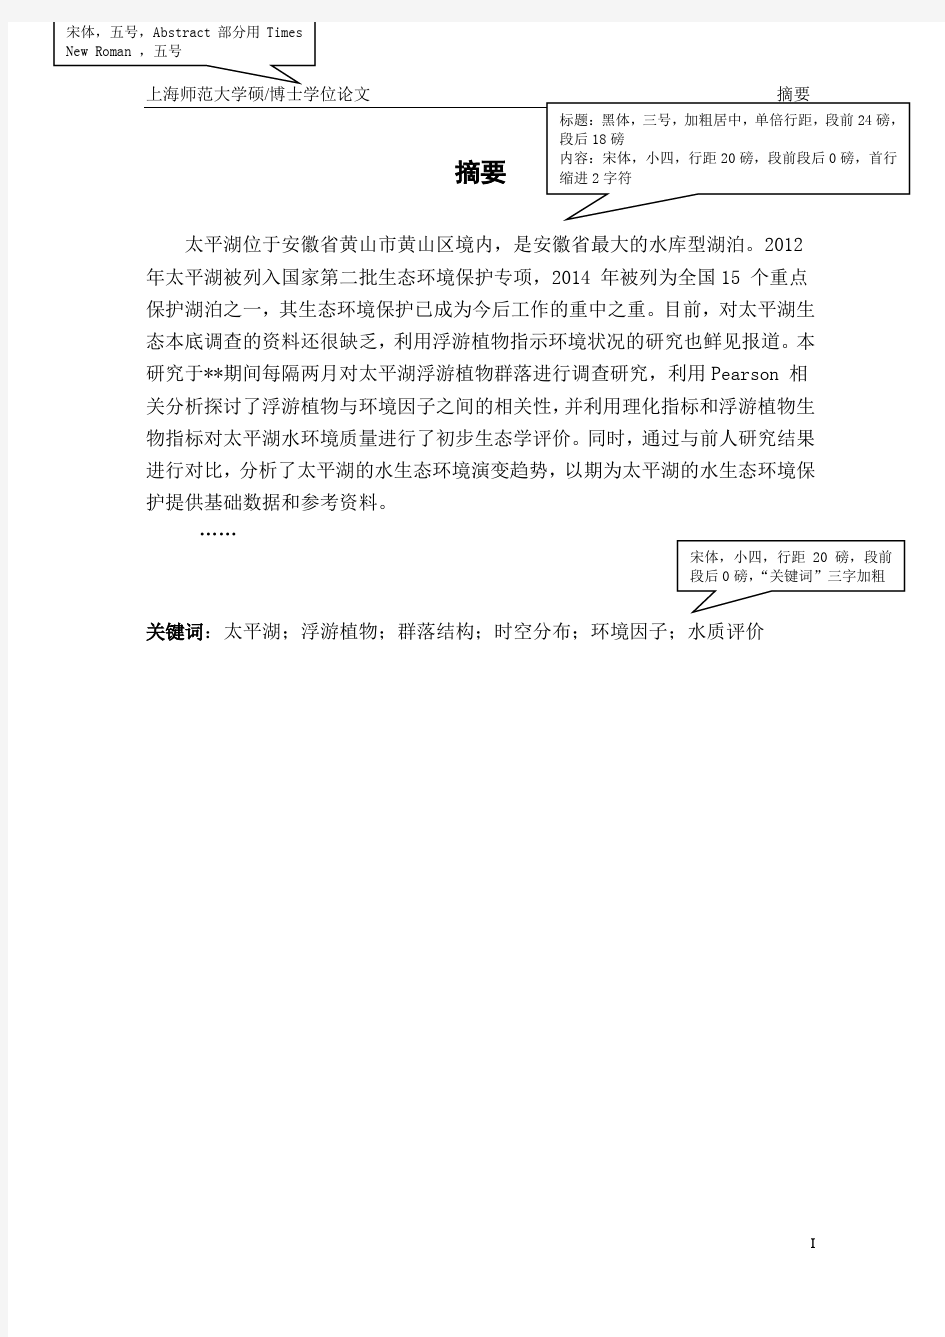 上海师范大学研究生学位论文规范示例